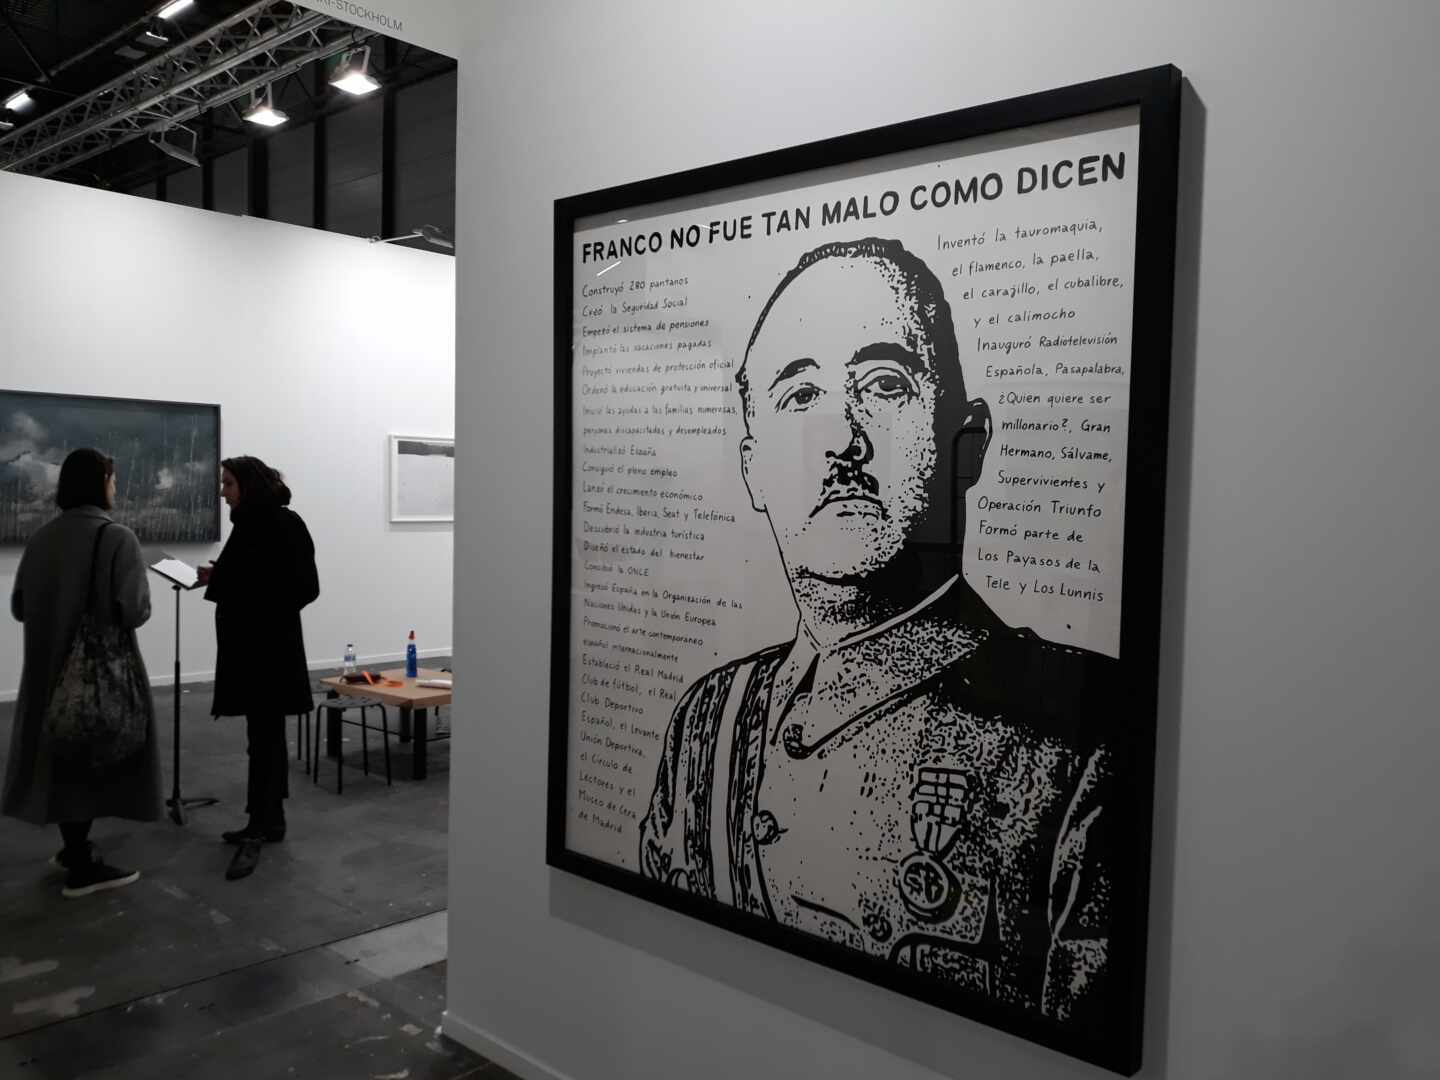 "Franco no era tan malo como dicen", una obra que busca provocar en ARCO